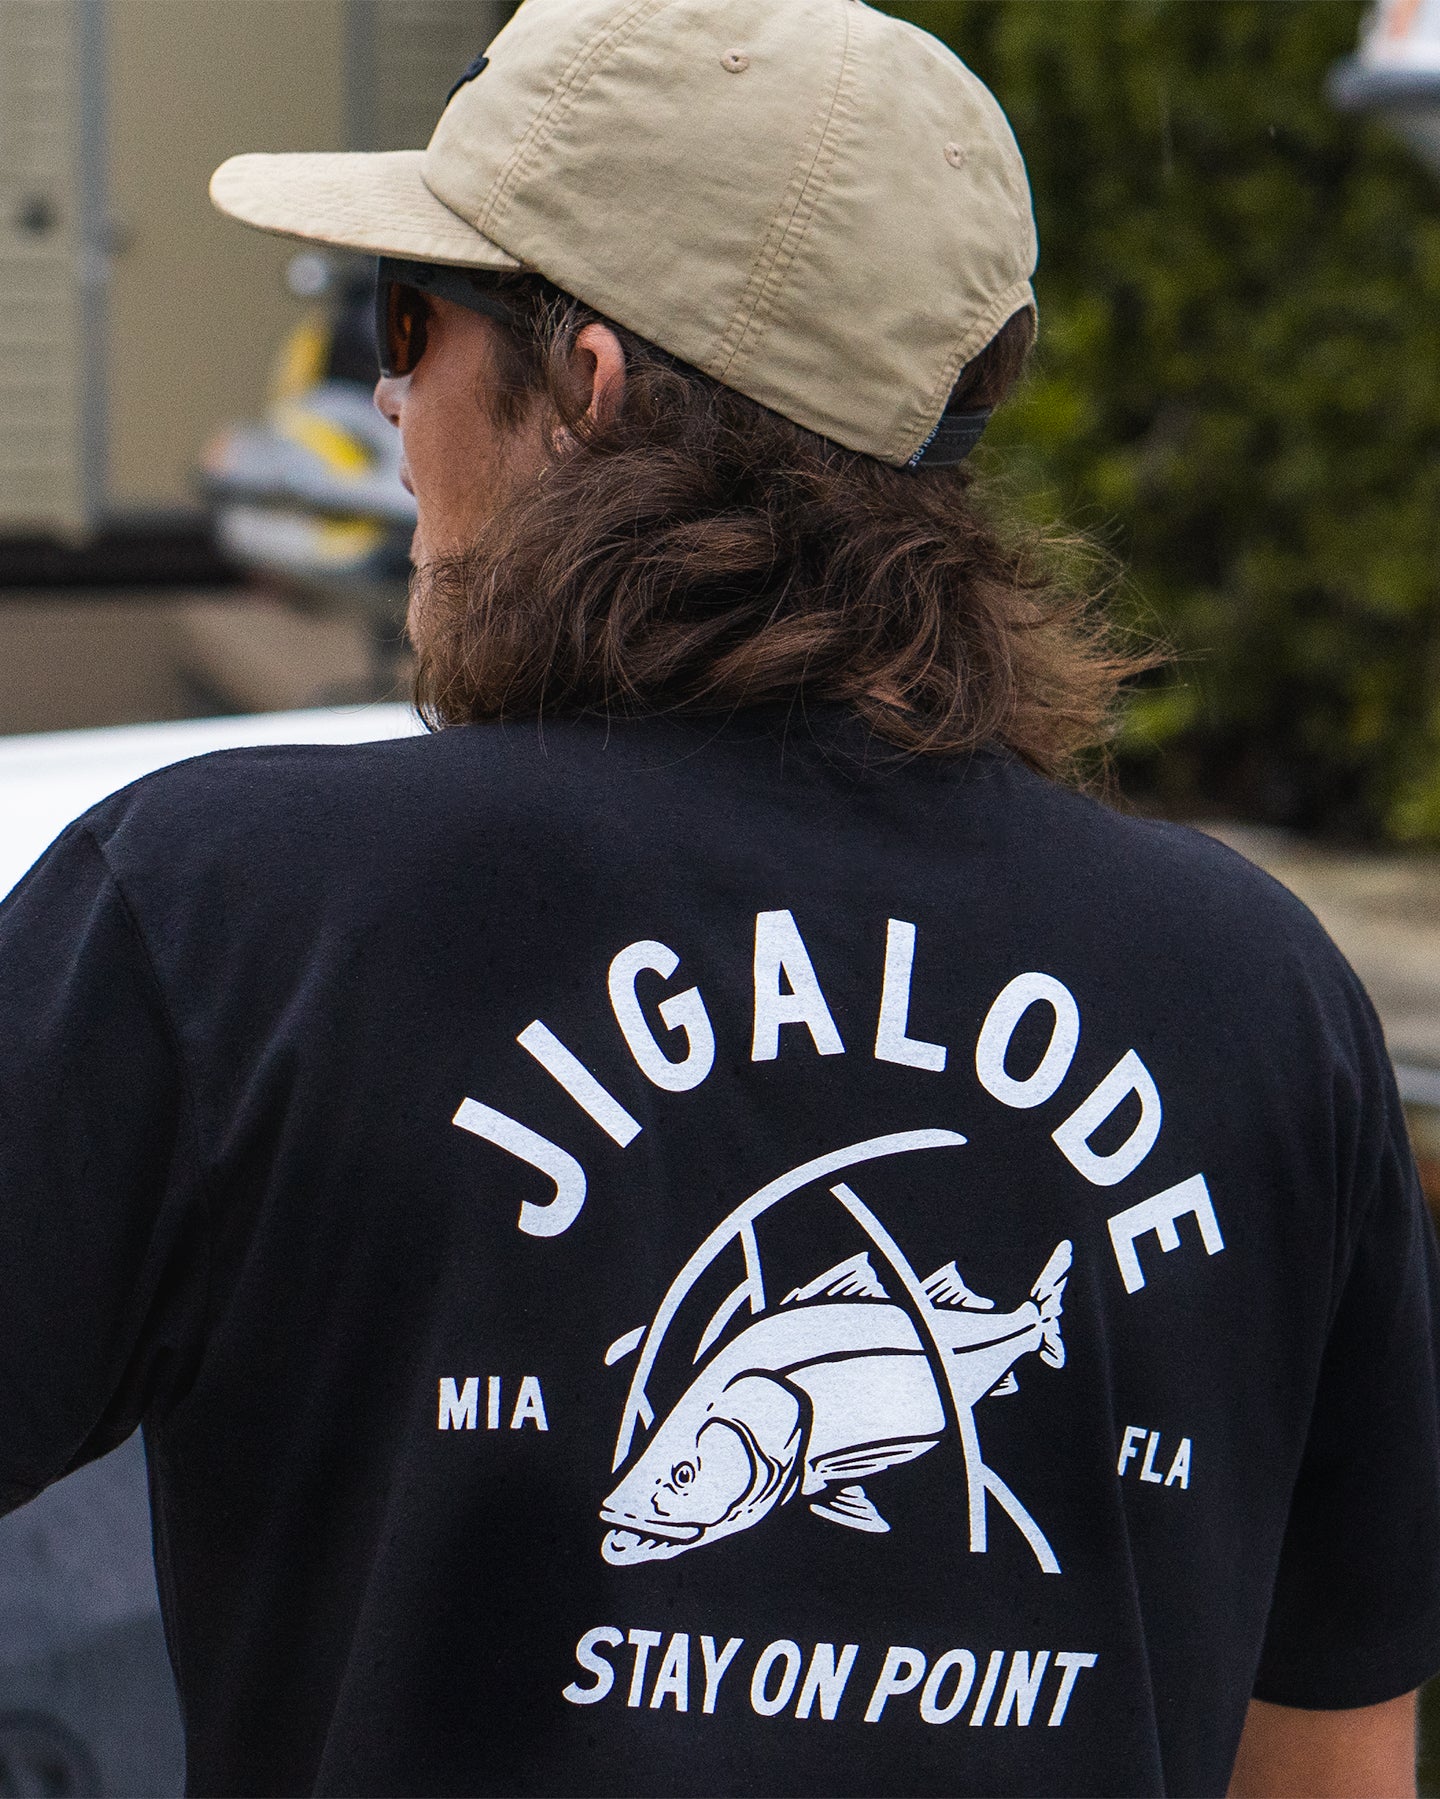 https://jigalode.com/cdn/shop/products/Jigalode-Groves-Snook-T-Shirt-Lifestyle.jpg?v=1671672124&width=1920